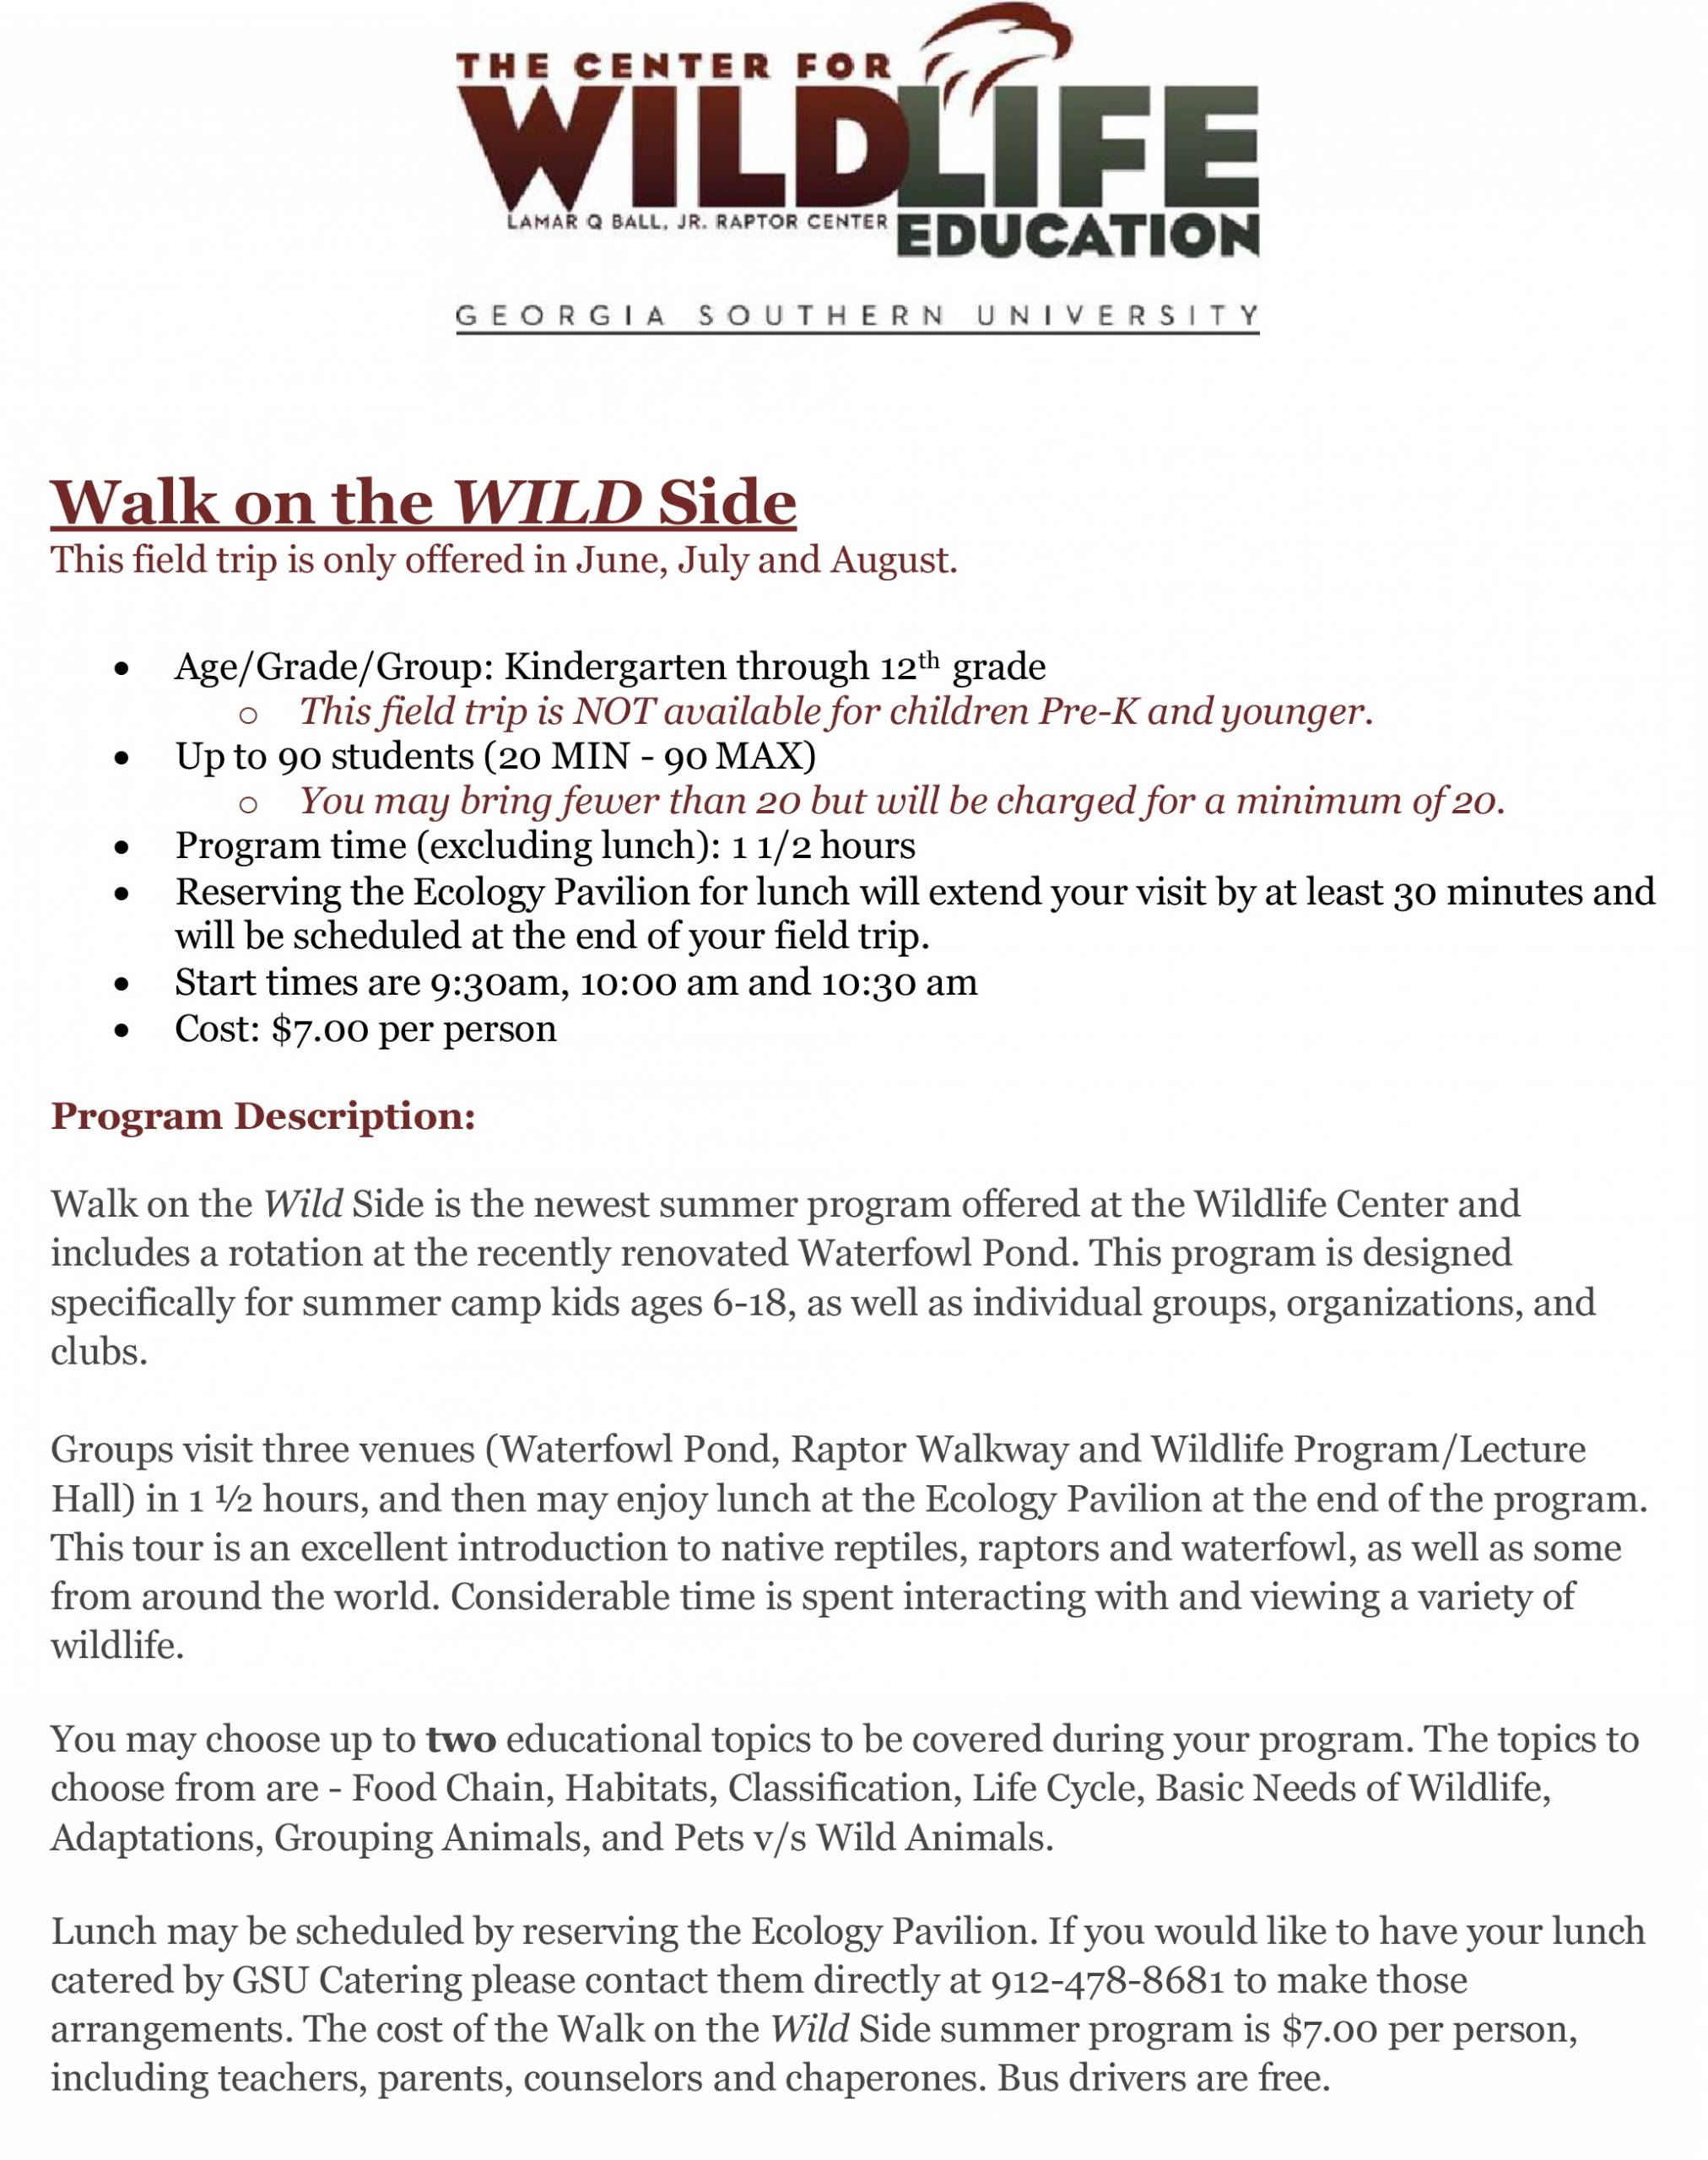 Walk-on-the-Wild-Side gsu summer program wildlife center 2021